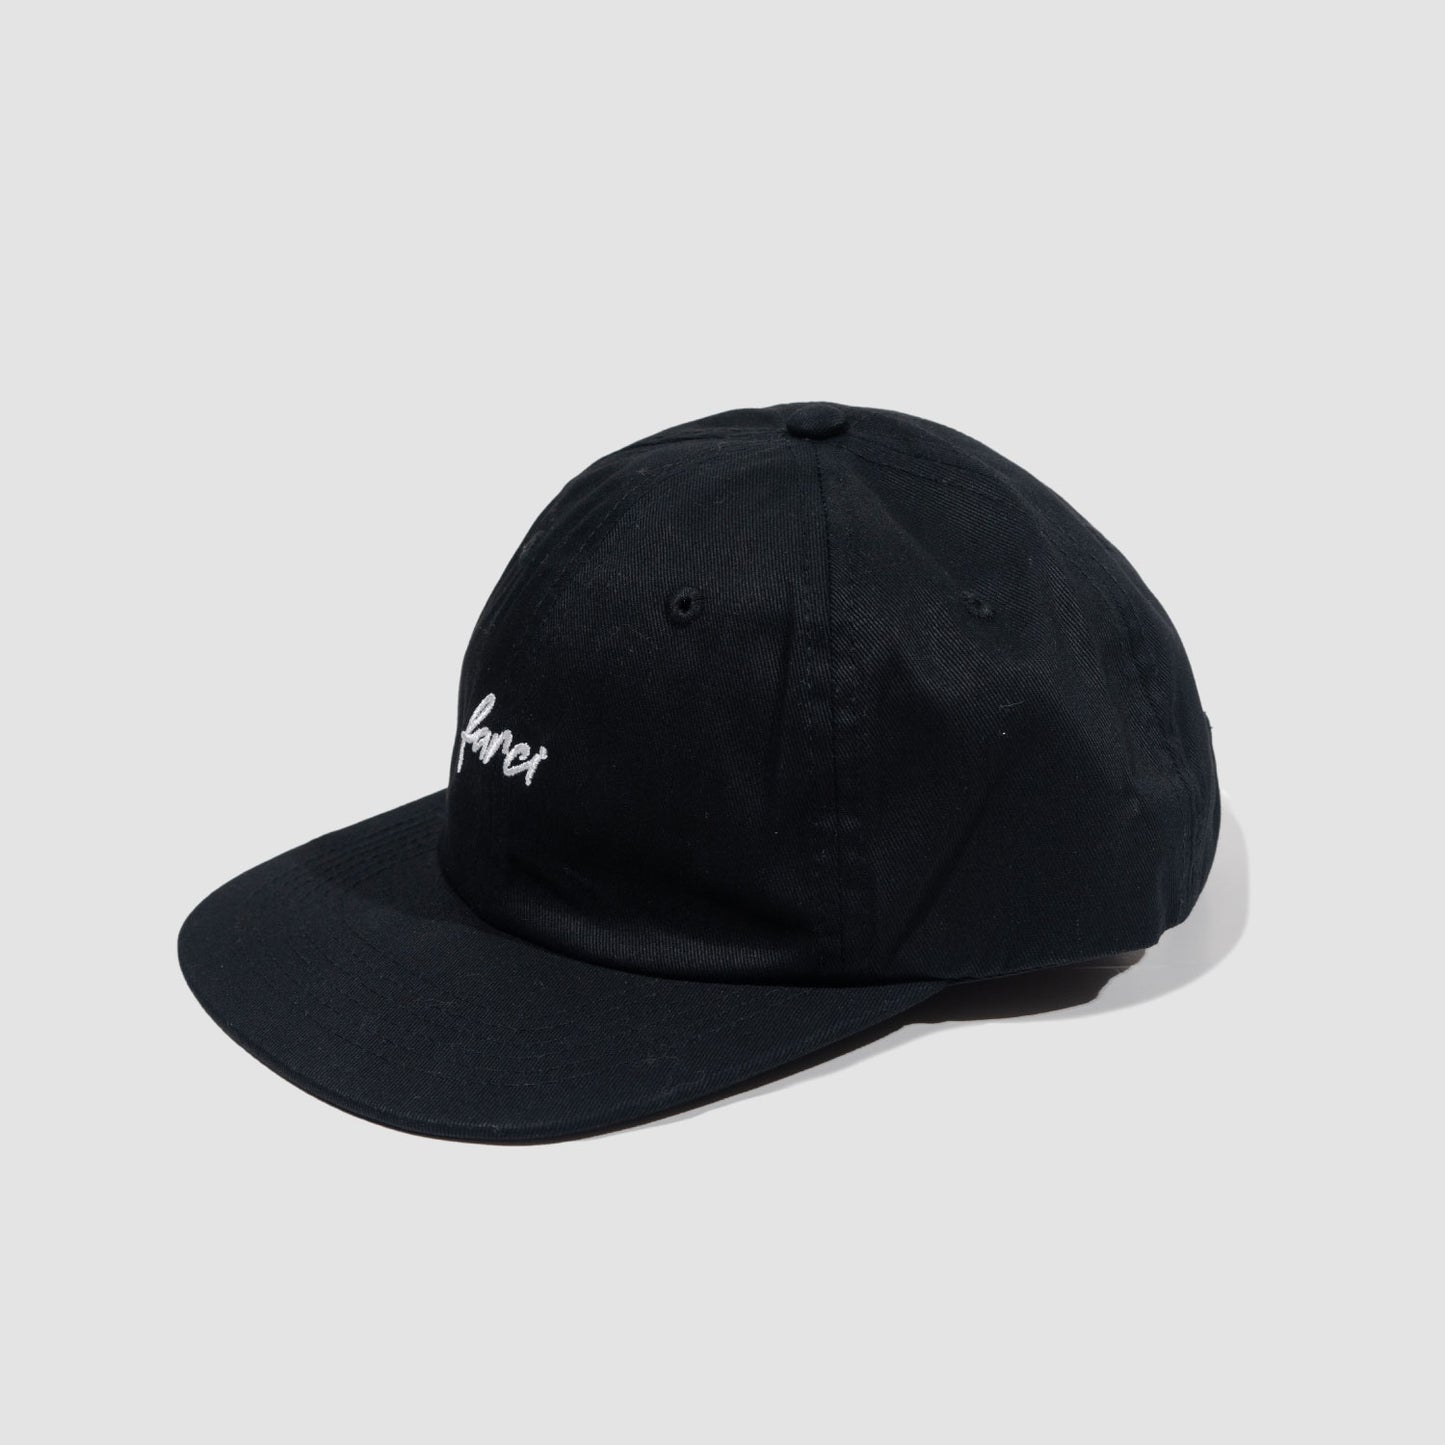 FARCI BLACK CAP